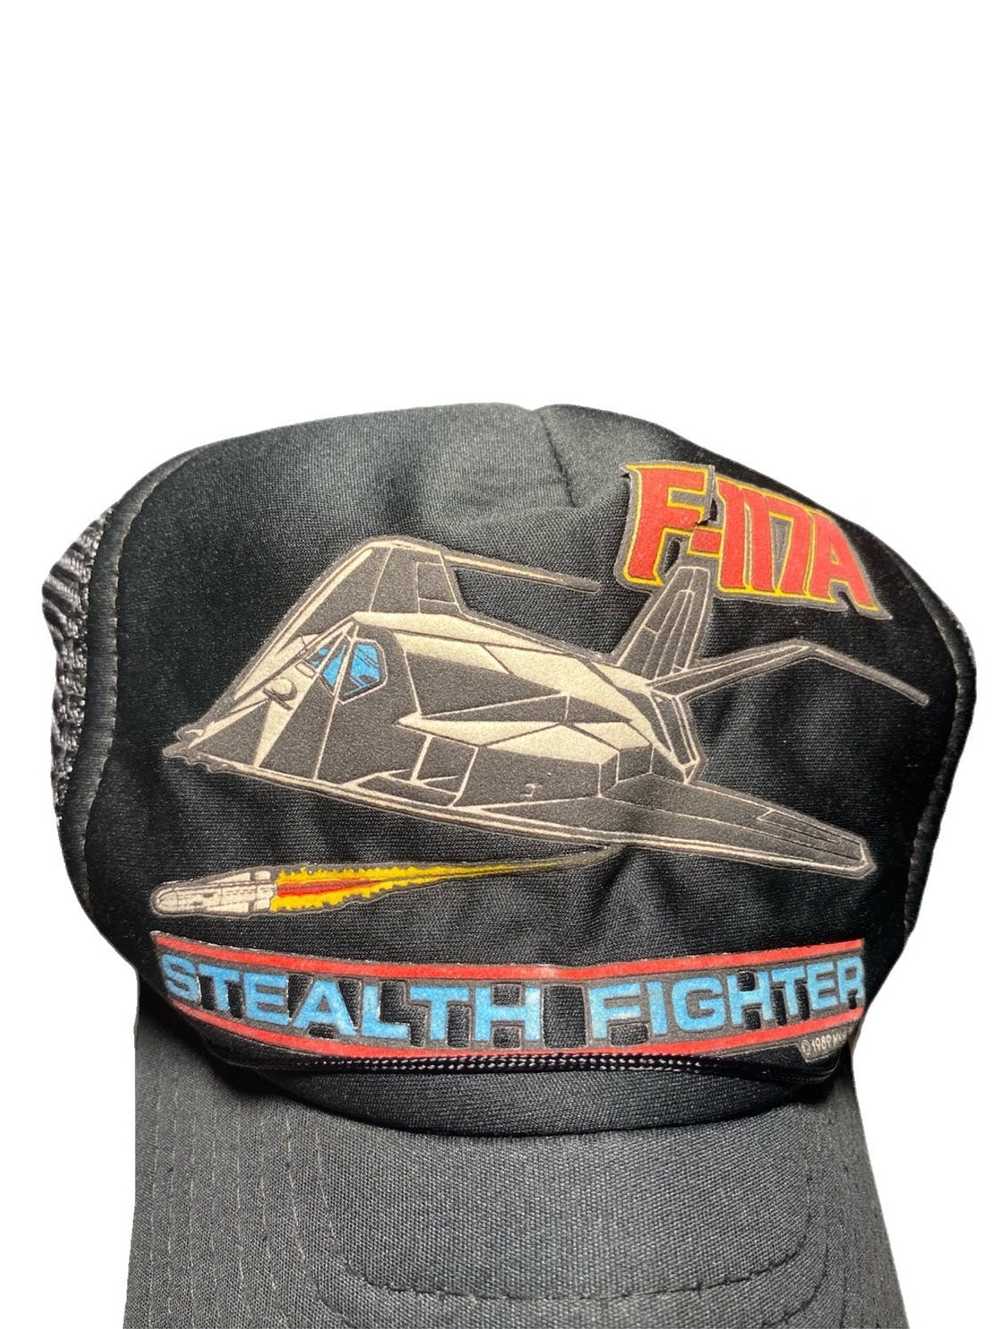 Vintage “F-117A Stealth Fighter Jet” trucker cap - image 4